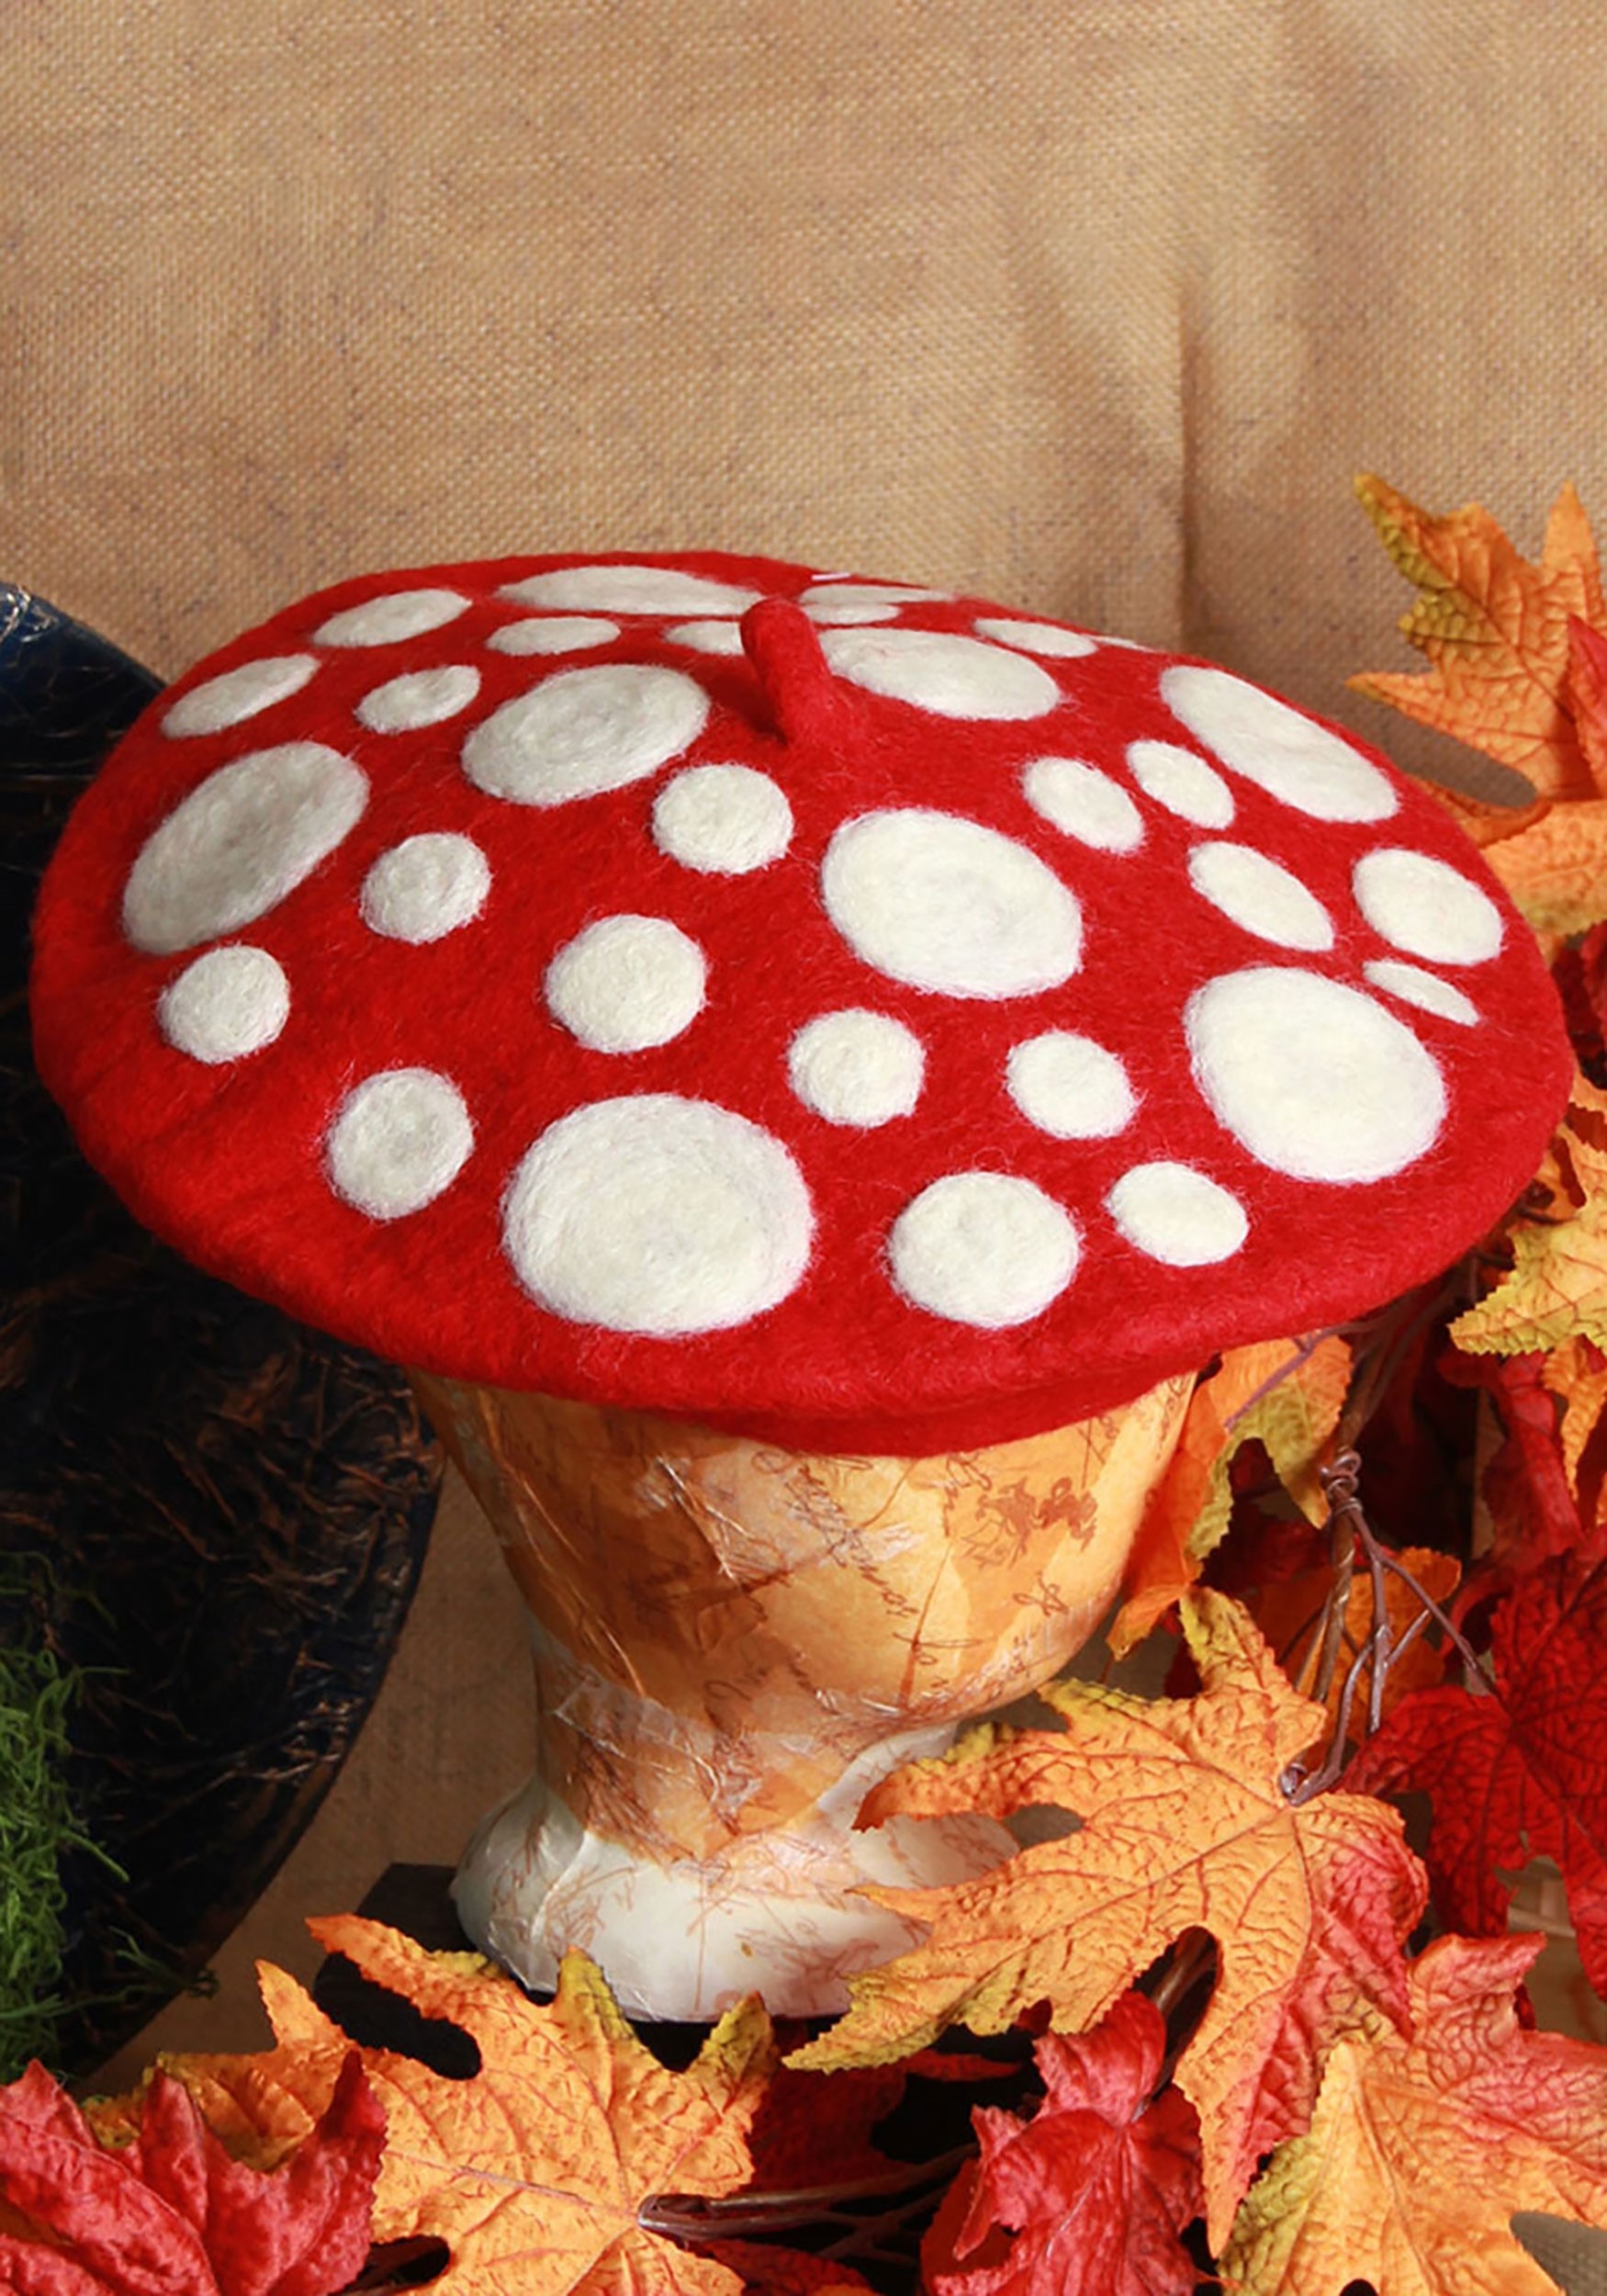 Mushroom Heartfelted Hat Costume Accessory